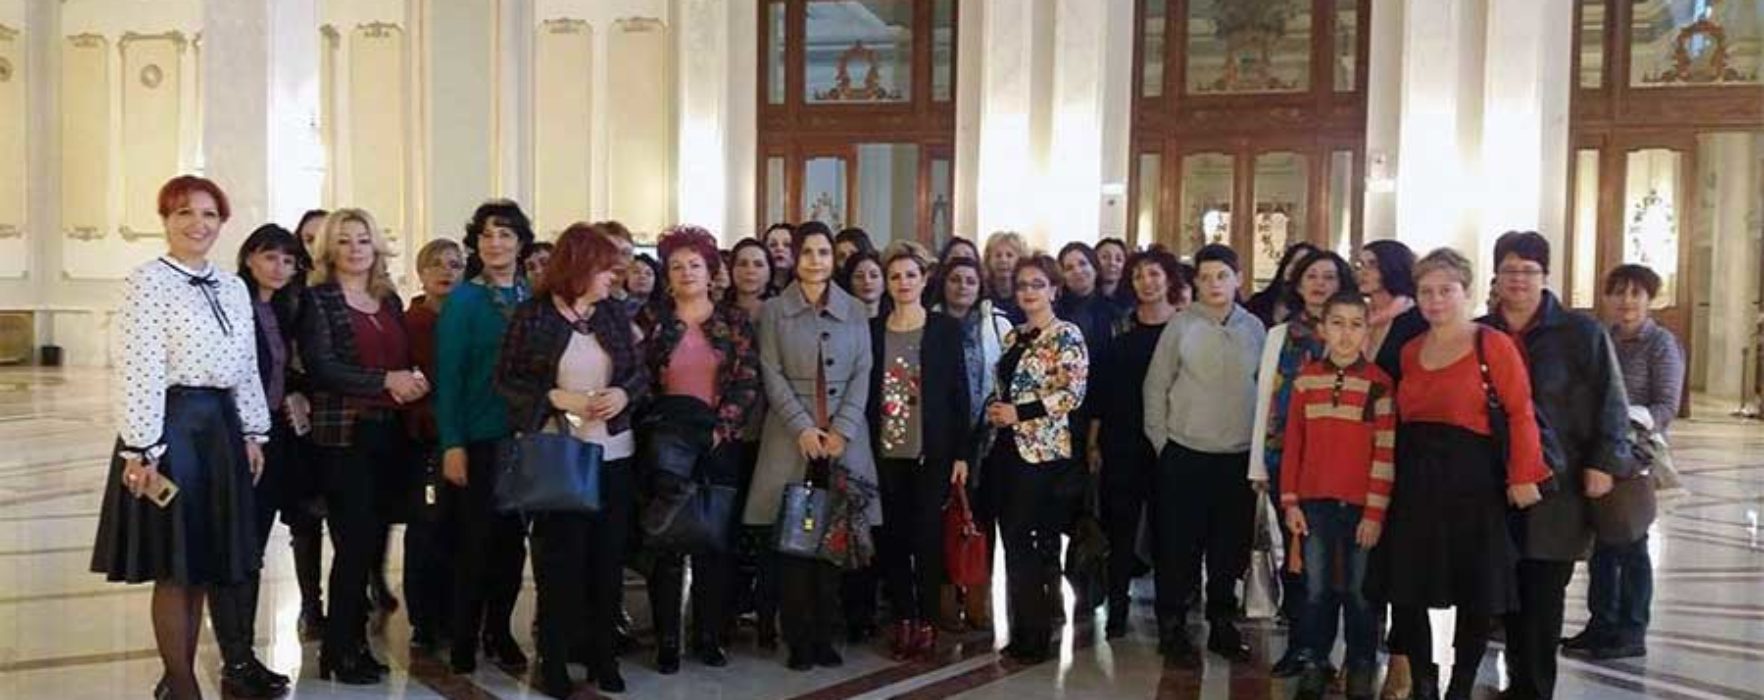 Oana Vlăducă (deputat PSD): Aducem dâmboviţeni în vizită la Parlament, le vorbim despre rolul instituţiei